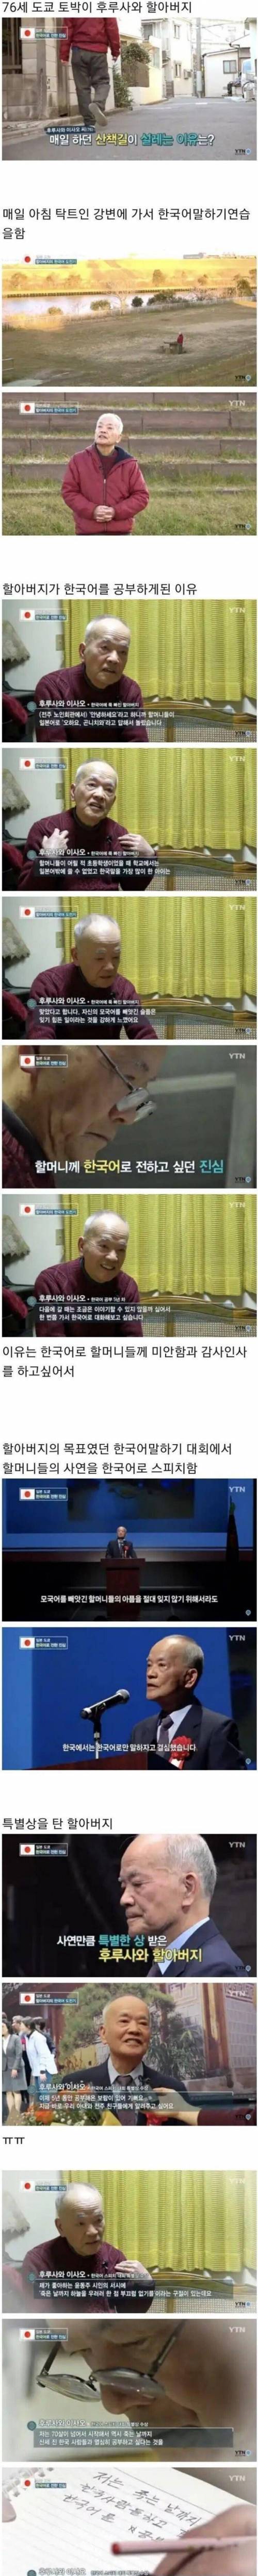 76살 할아버지가 한국어를 배우는 이유.jpg